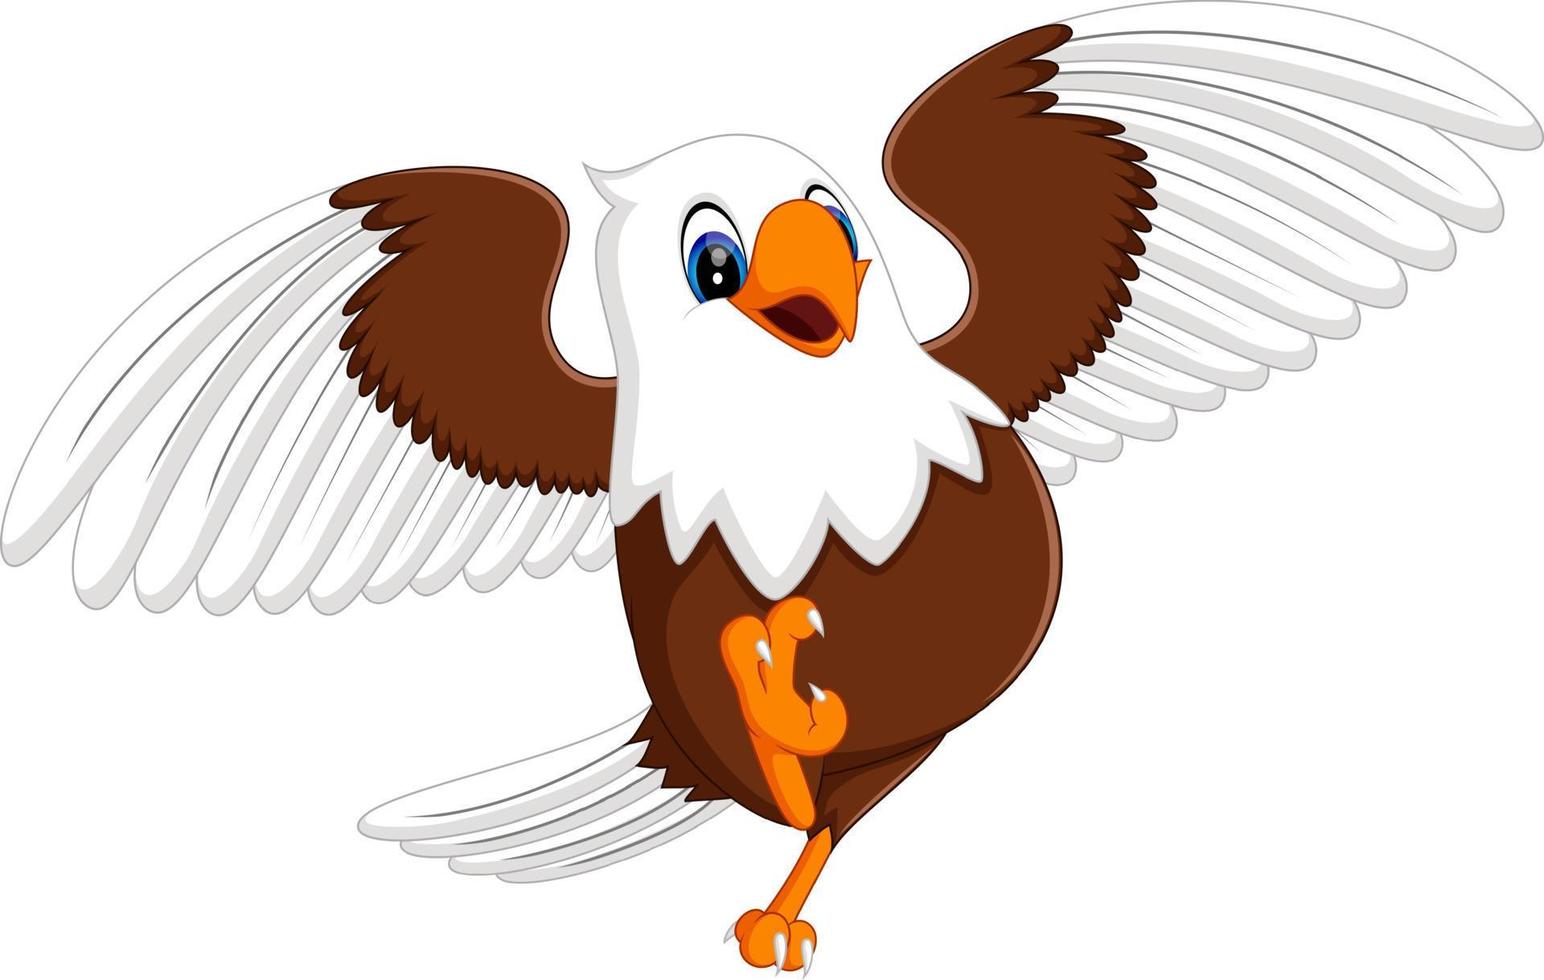 ilustración de dibujos animados lindo águila vector